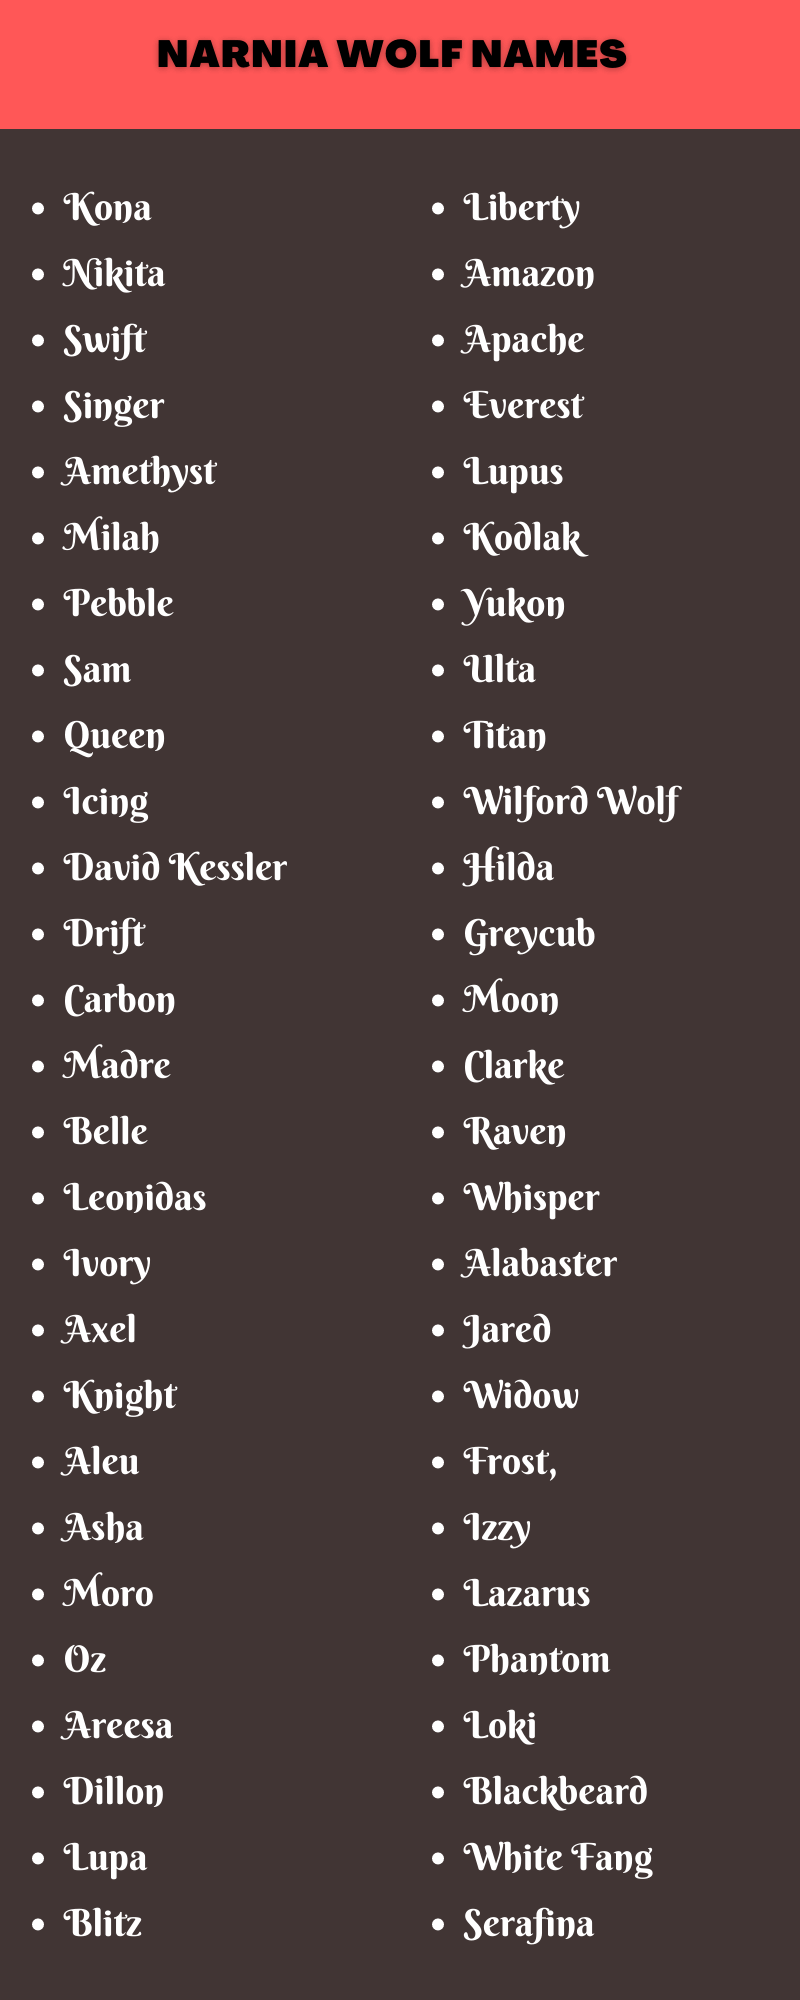 Narnia Wolf Names